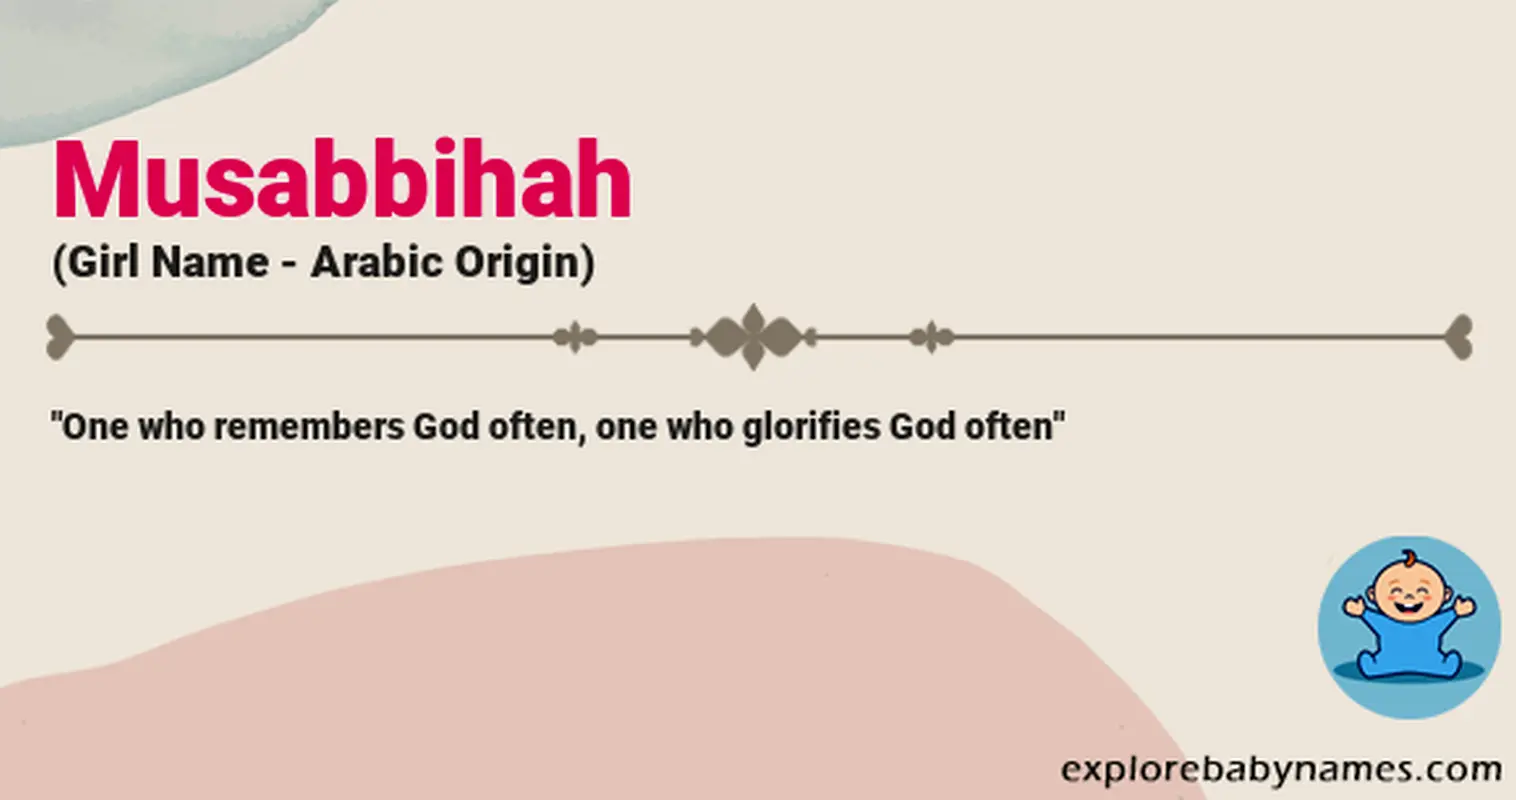 Meaning of Musabbihah